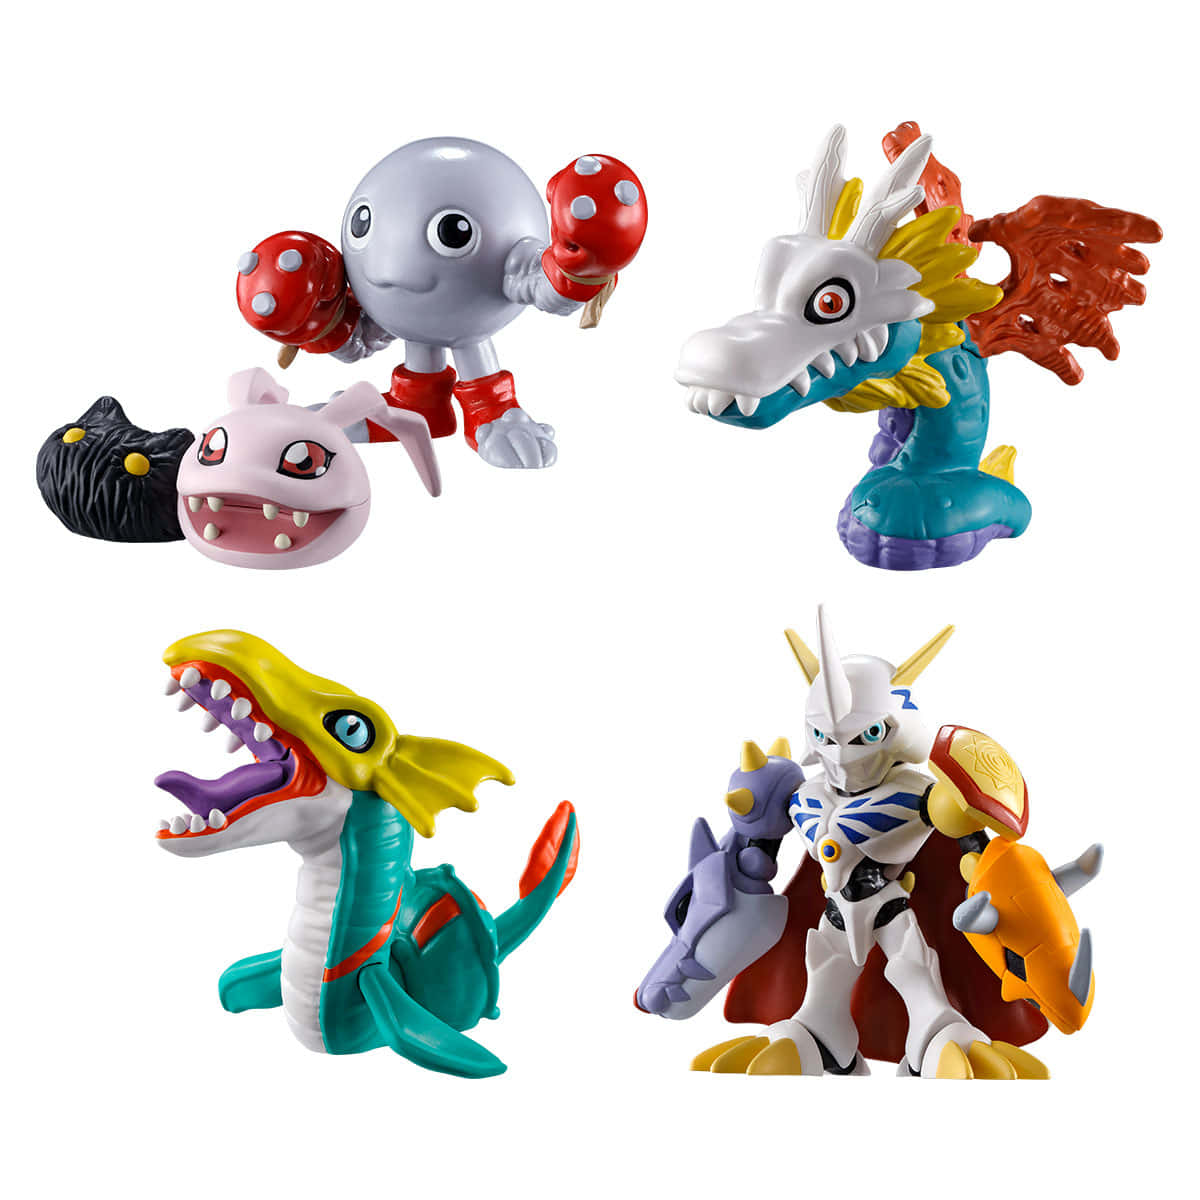 Immaginidella Collezione Di Figurine Digimon